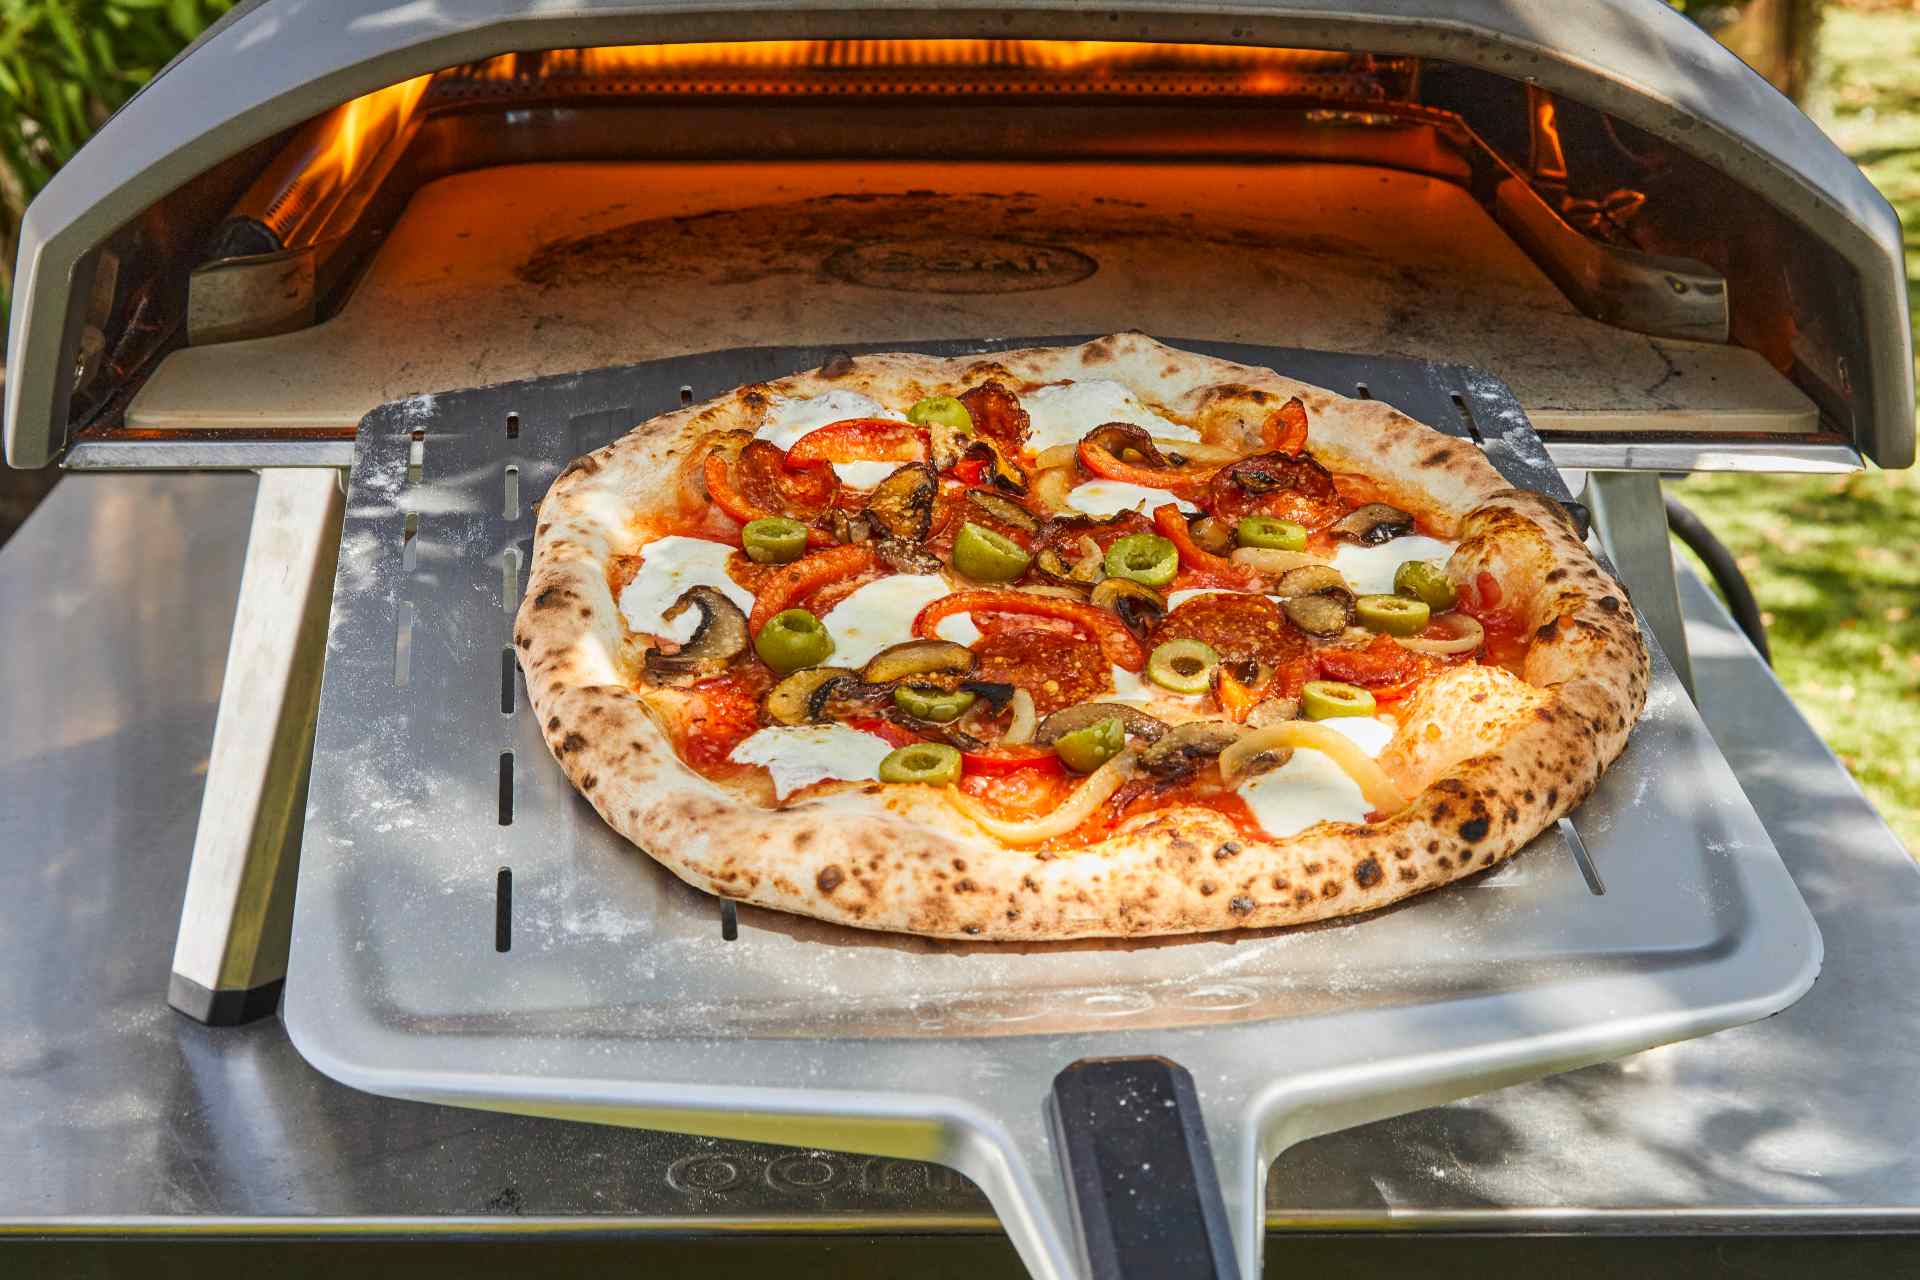 Guide des farines les plus courantes dans la fabrication de pizzas — Ooni FR